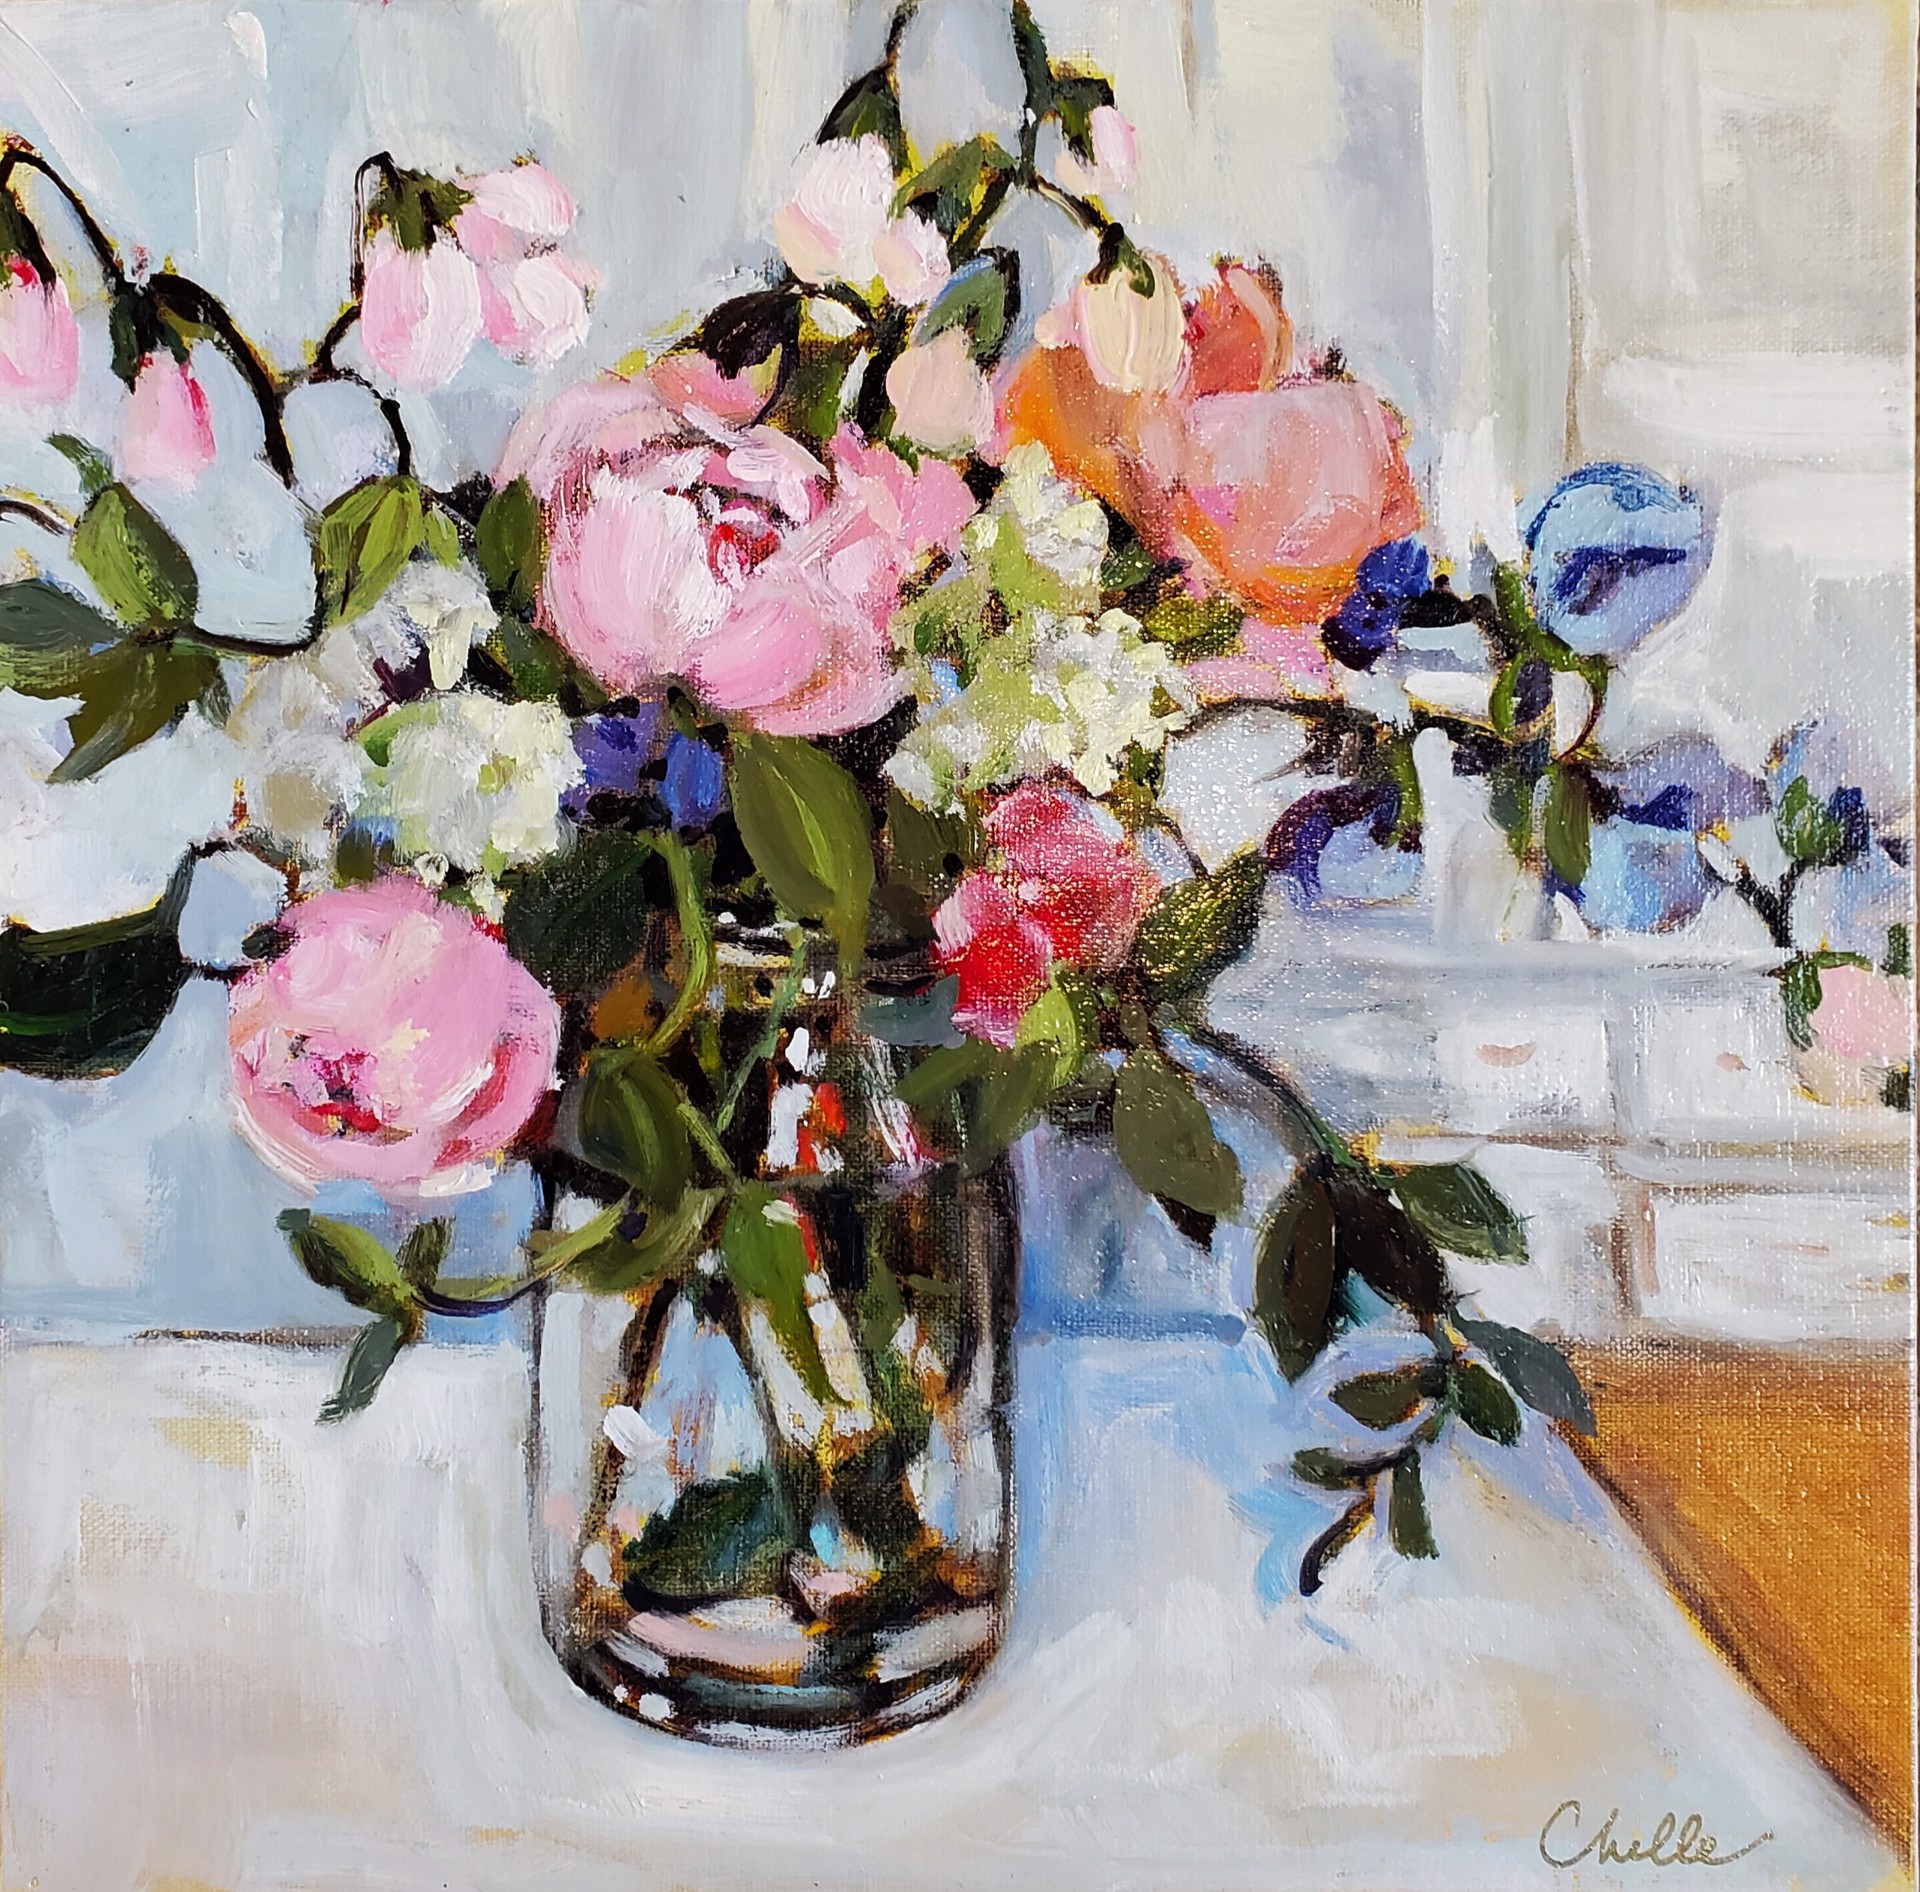 Kitchen Flowers by Chelle Gunderson